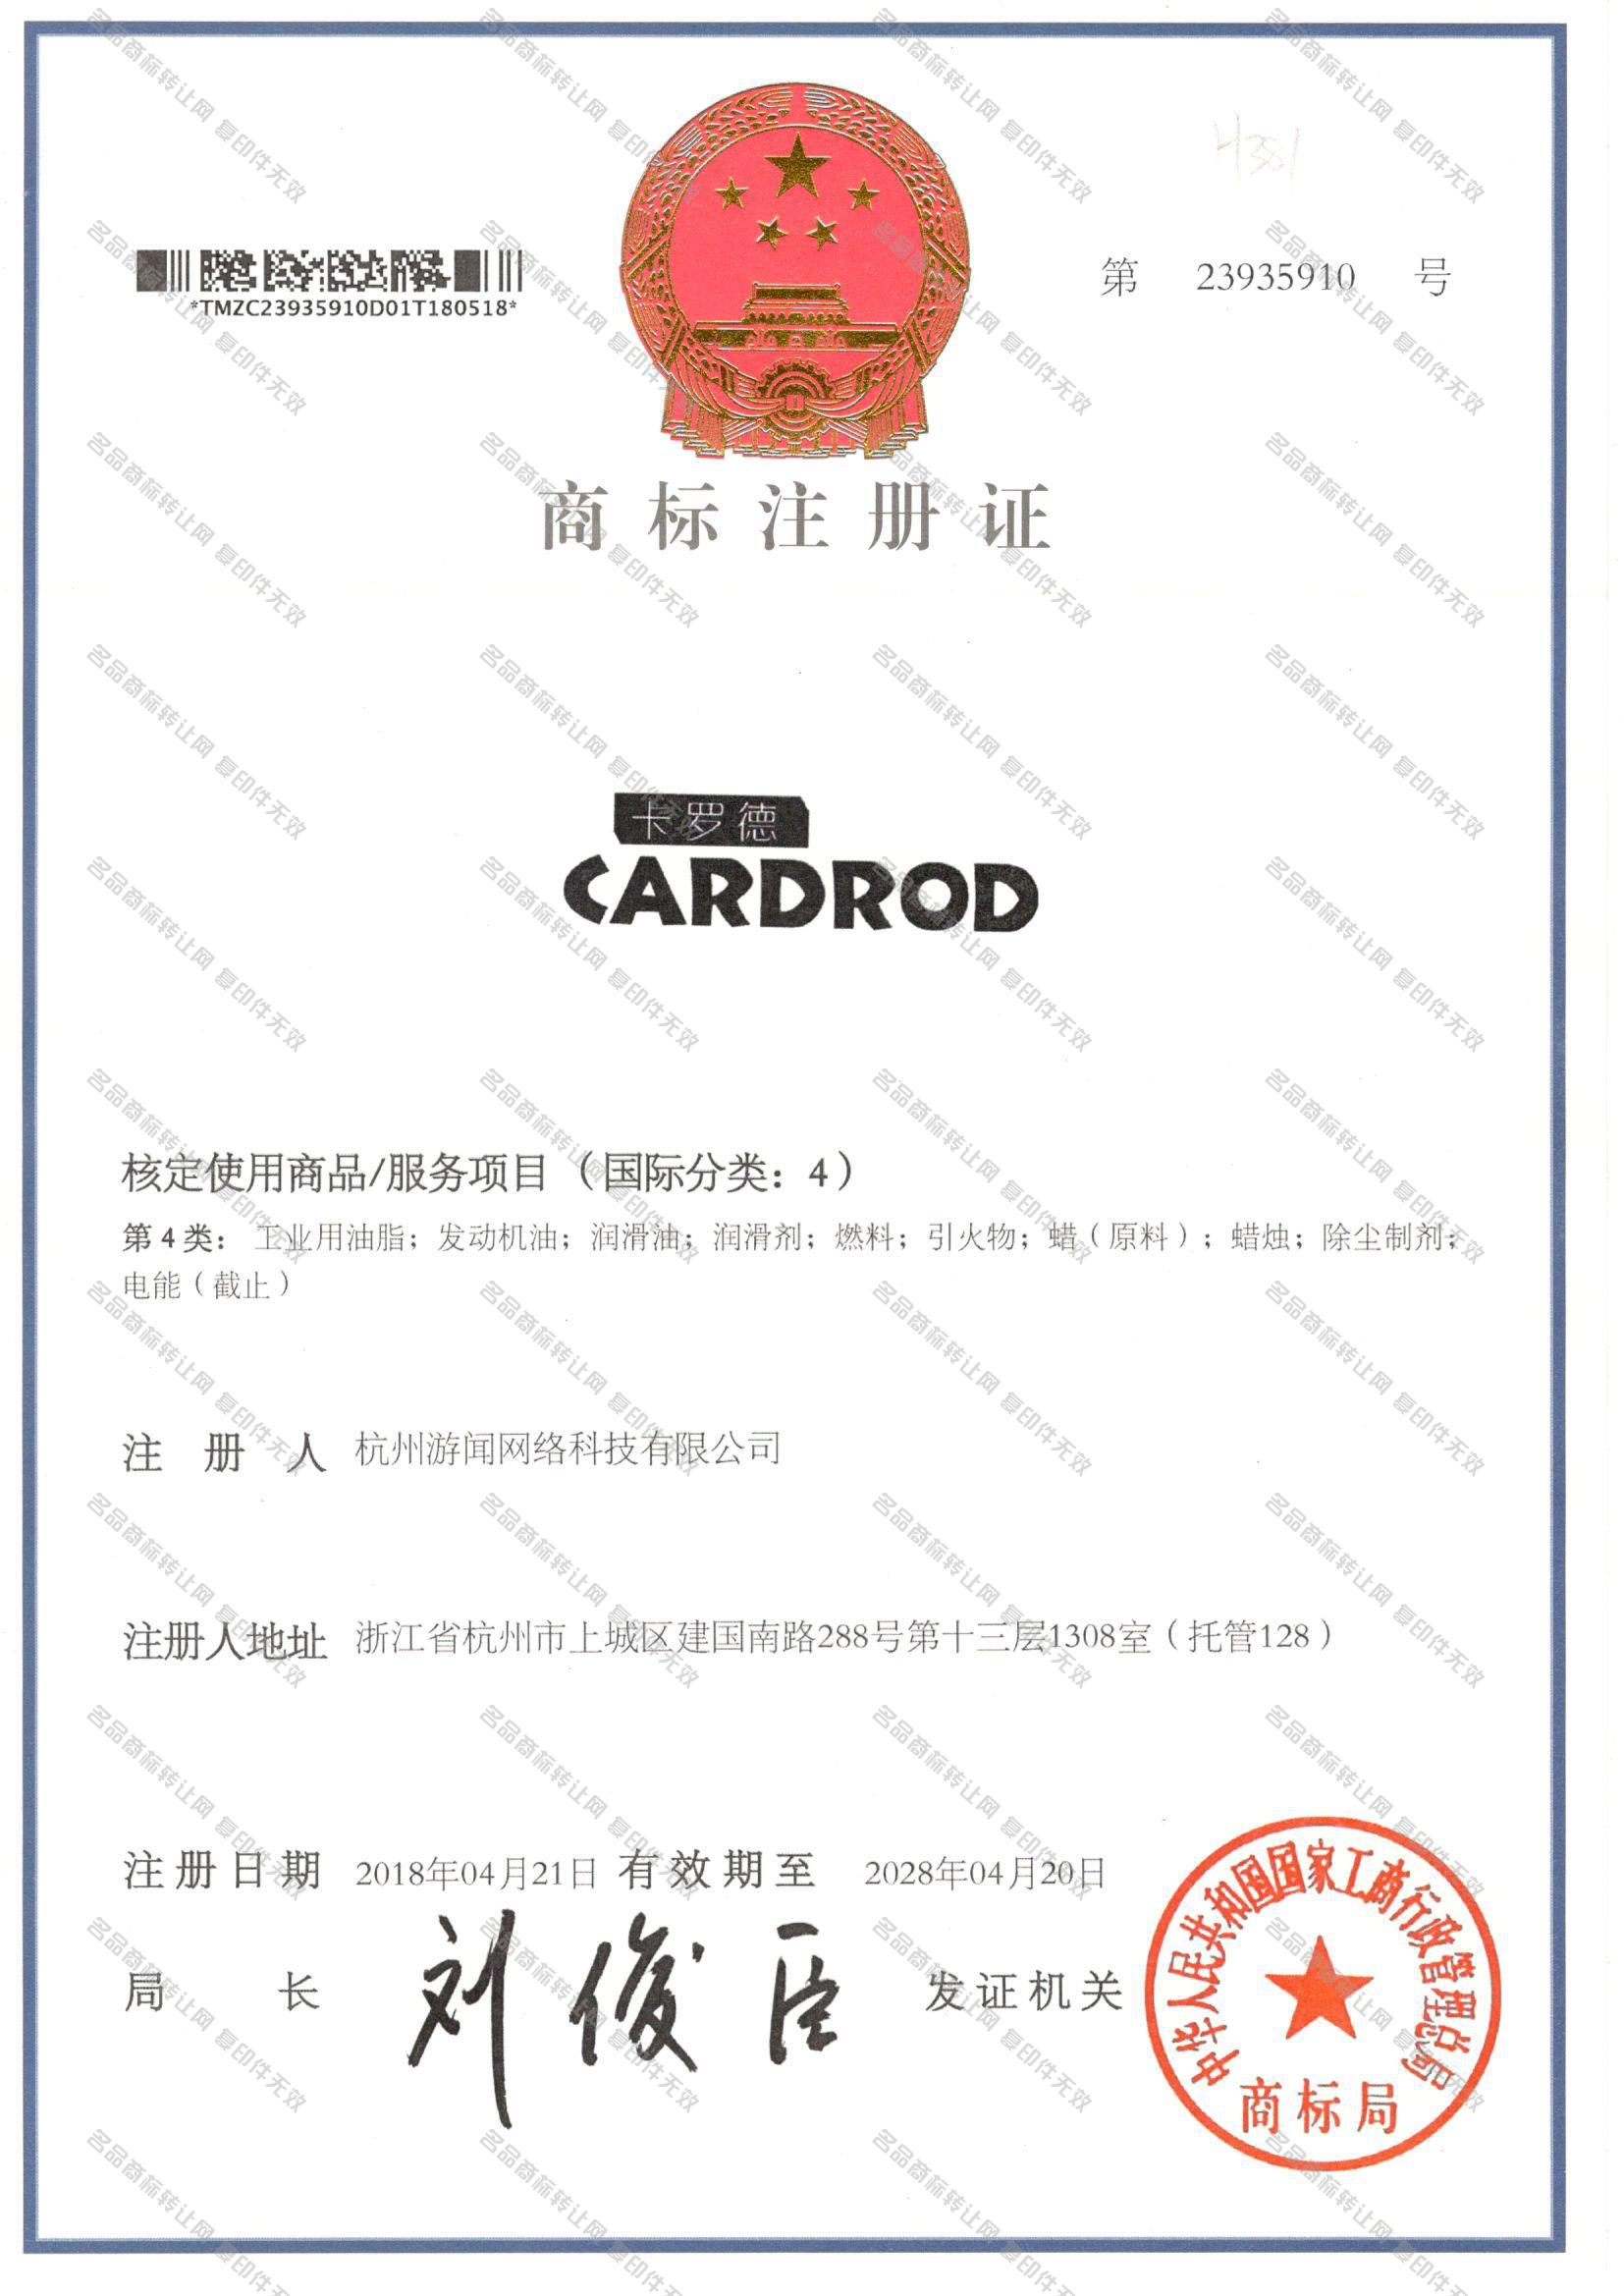 卡罗德 CARDROD注册证